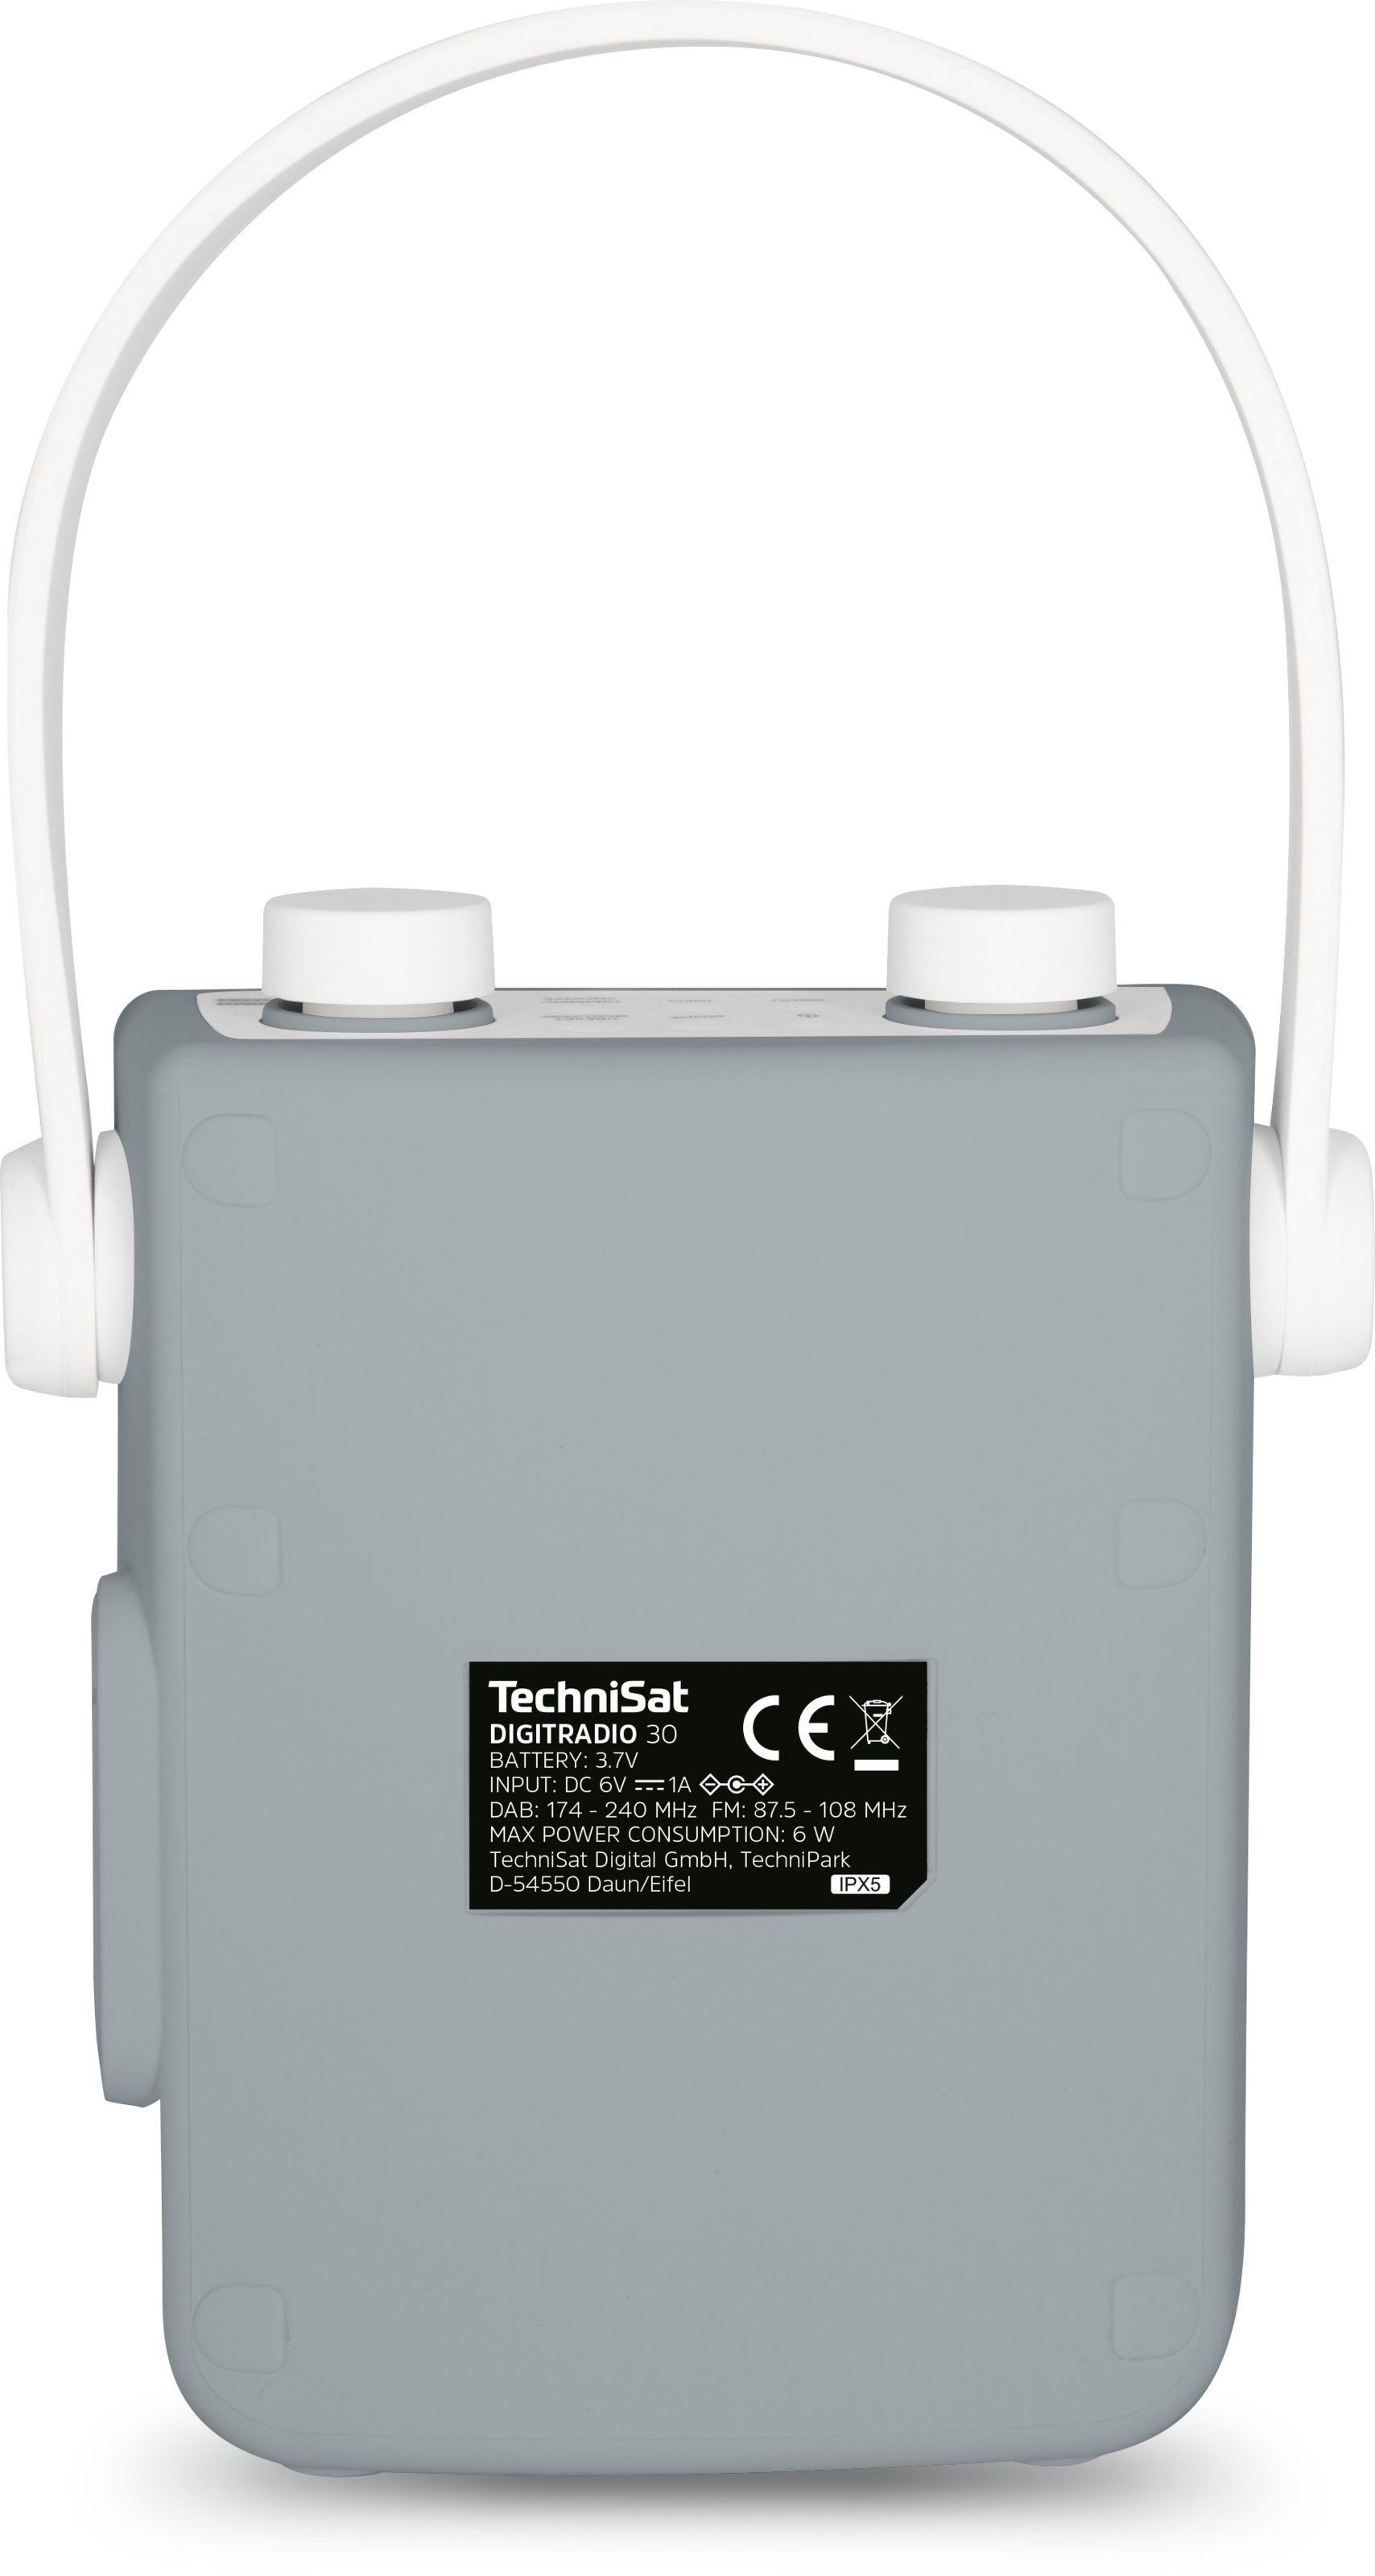 TechniSat DIGITRADIO 30 Duschradio Bluetooth-Audiostreaming) (DAB) (Digitalradio RDS, W, Digitalradio grau mit wasserdicht, UKW-Radio (DAB), tragbar, 2,00